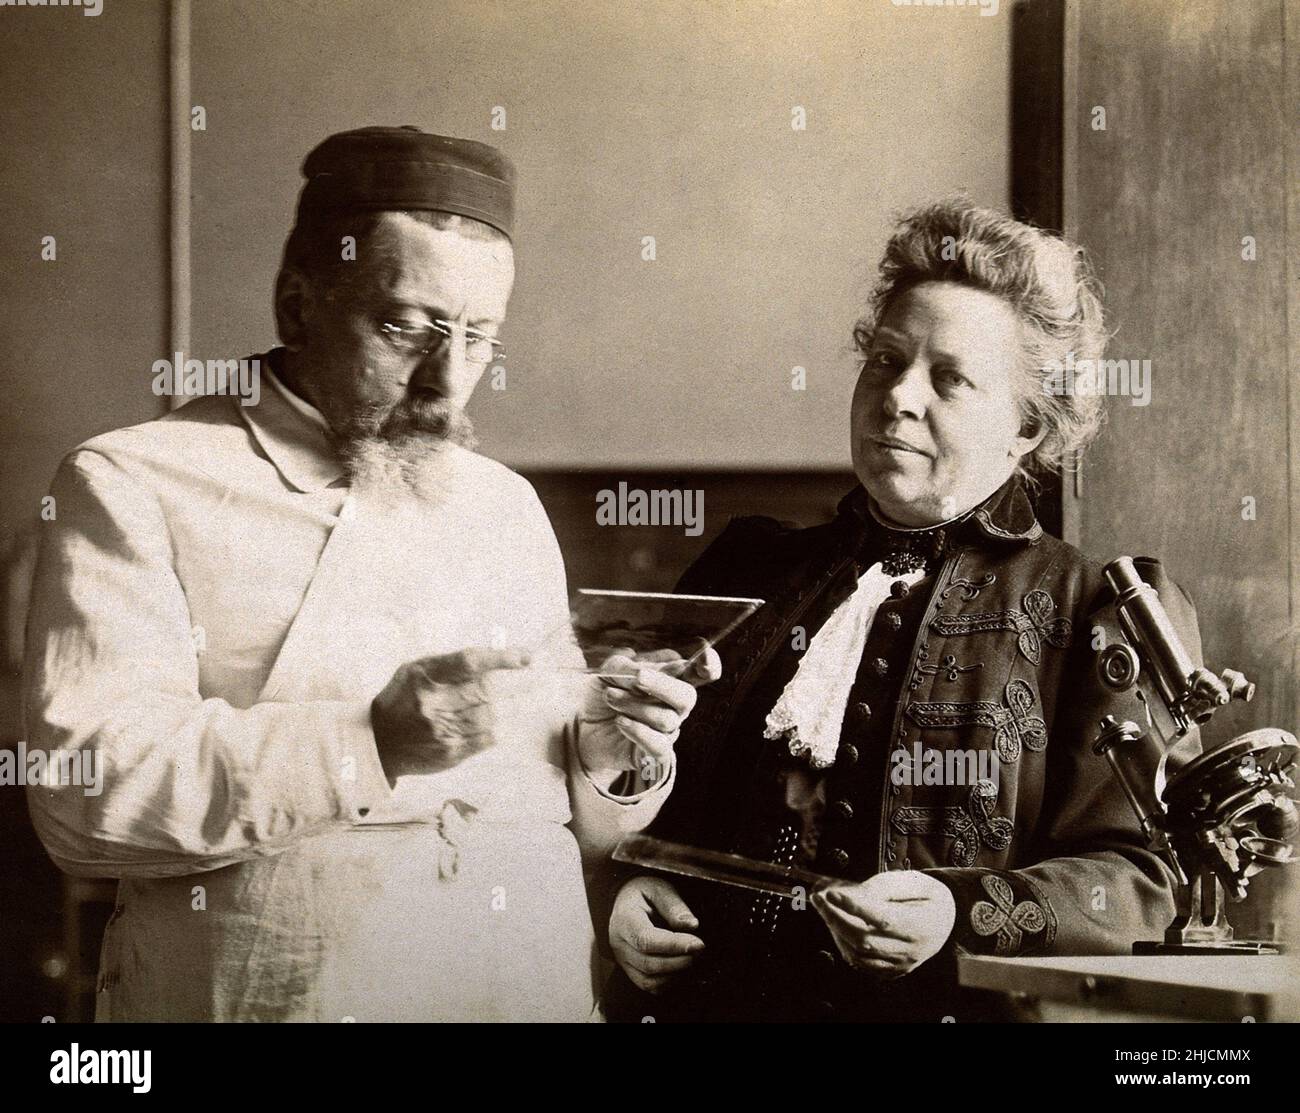 Les neurologues français Augusta Dejerine-Klumpke (1859-1927) et son mari Joseph Jules Dejerine (1849-1917) travaillent dans leur laboratoire avant 1917.Le Klumpke d'origine américaine était connu pour son travail en neuroanatomie.Entre autres réalisations, elle a expliqué ce qu'on appelle aujourd'hui la paralysie de Klumpke, ou une blessure aux nerfs contrôlant le mouvement du bras.Elle était la sœur de l'astronome Dorothea Klumpke. Banque D'Images